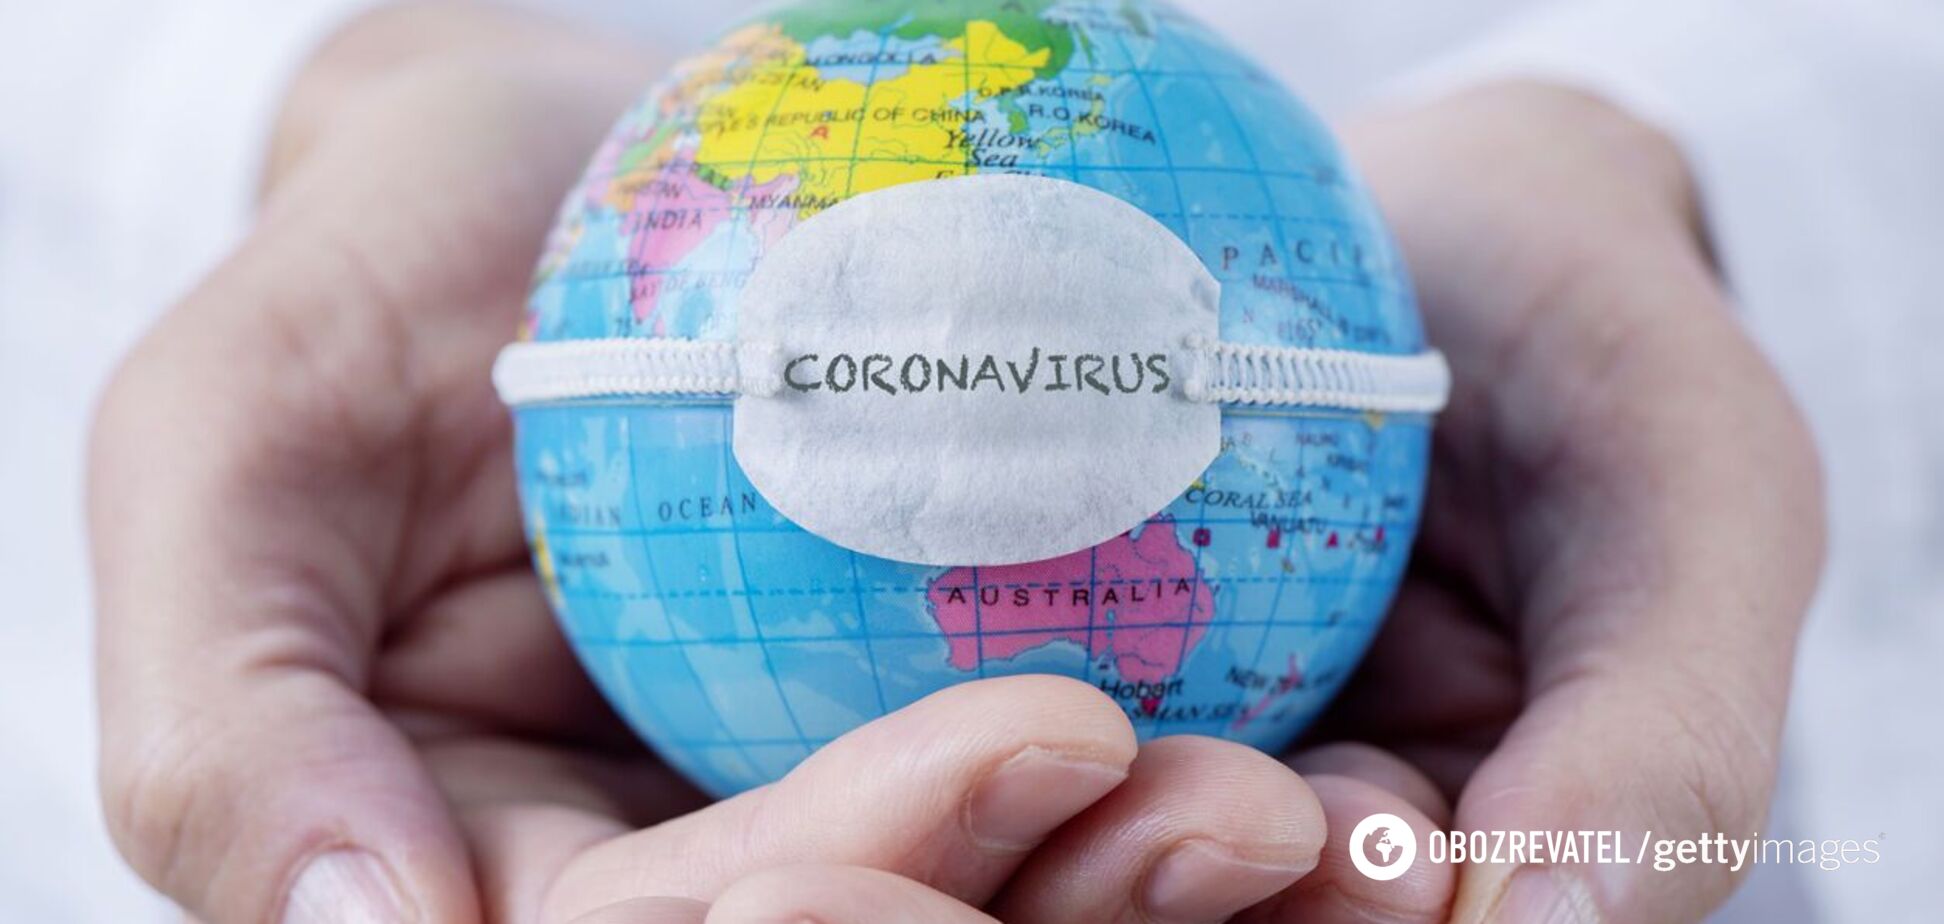 Пандемія коронавірусу